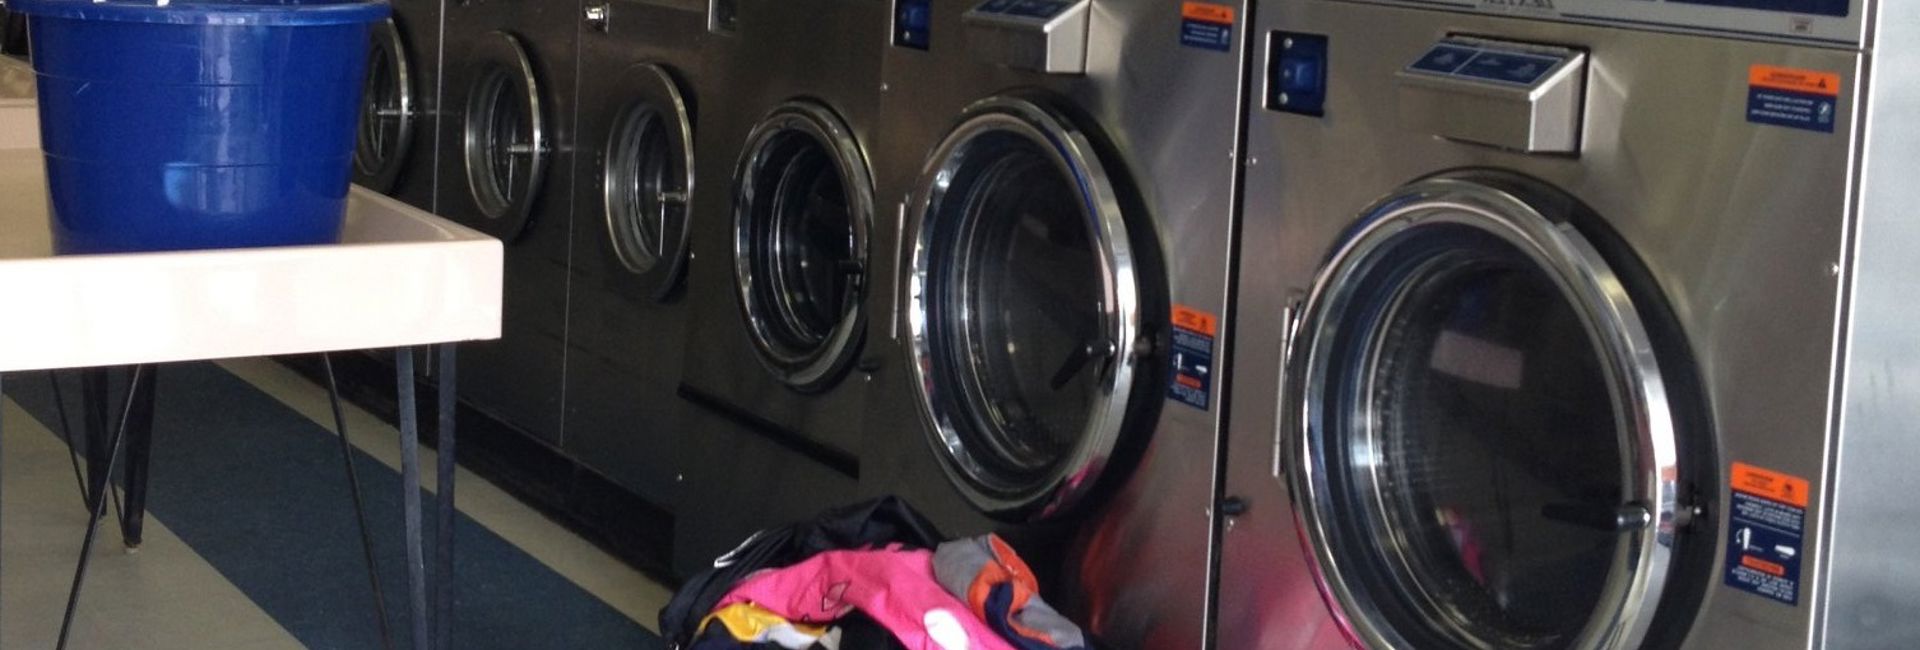 Laundry Pickup Service In Tarpon Springs